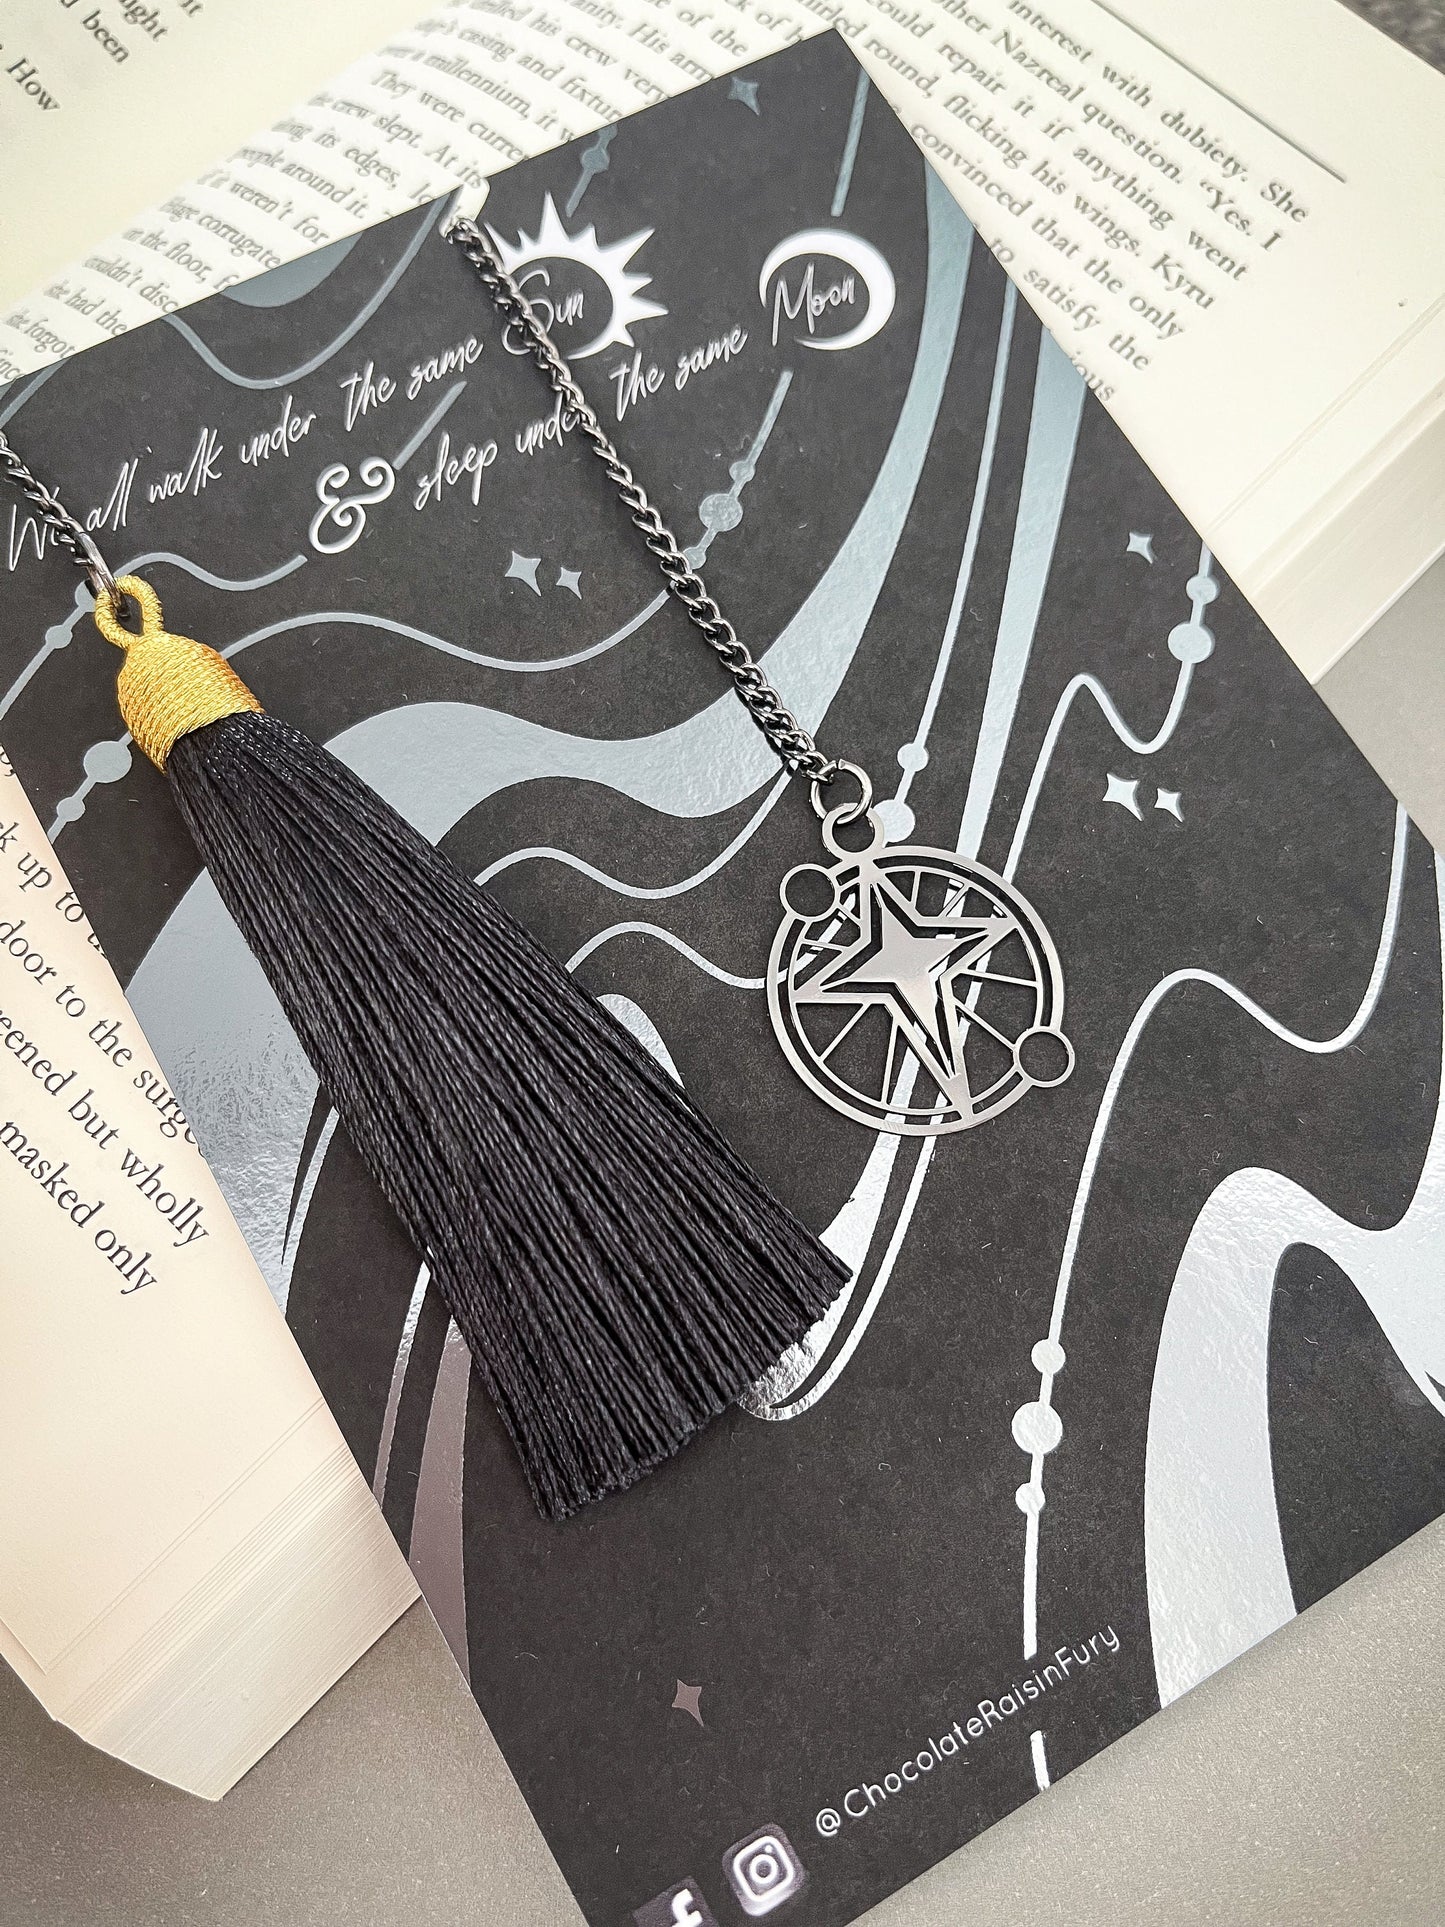 Mini Black Star Metal Bookmark - Metal Bookmark, Book Accessories, Book Lovers Gift